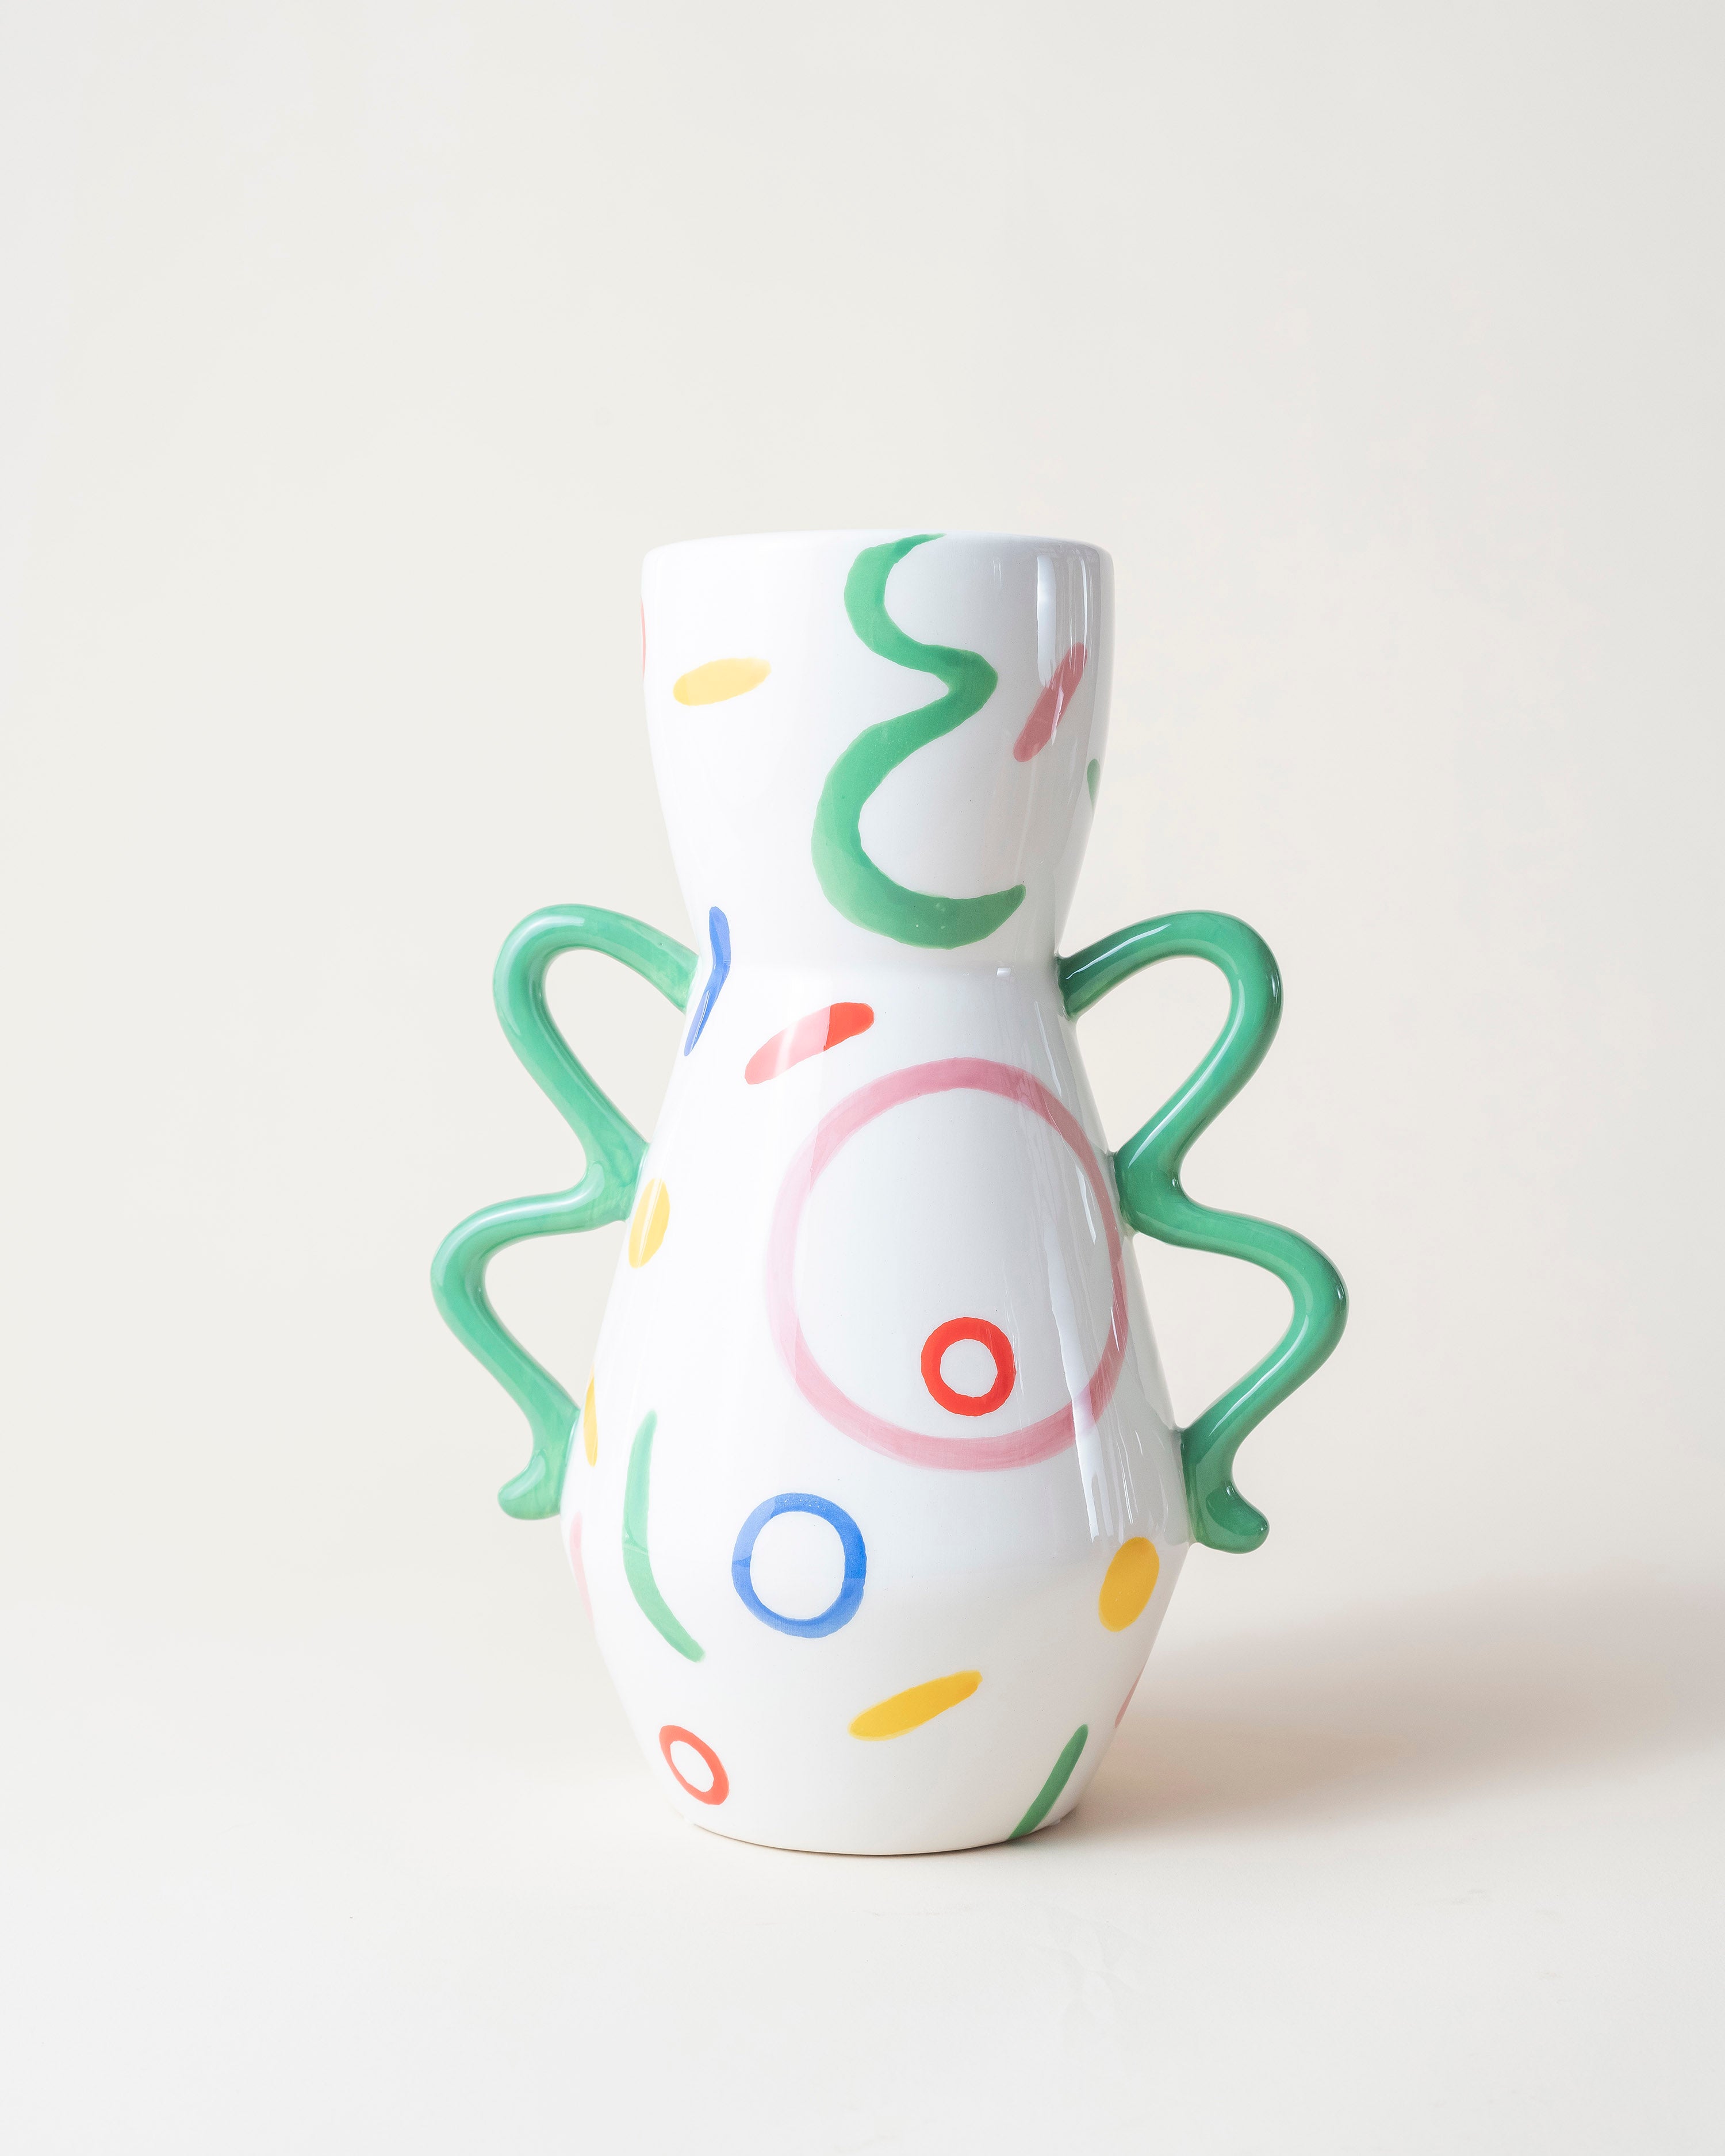 Vase Luis/Artistic Minimalistic